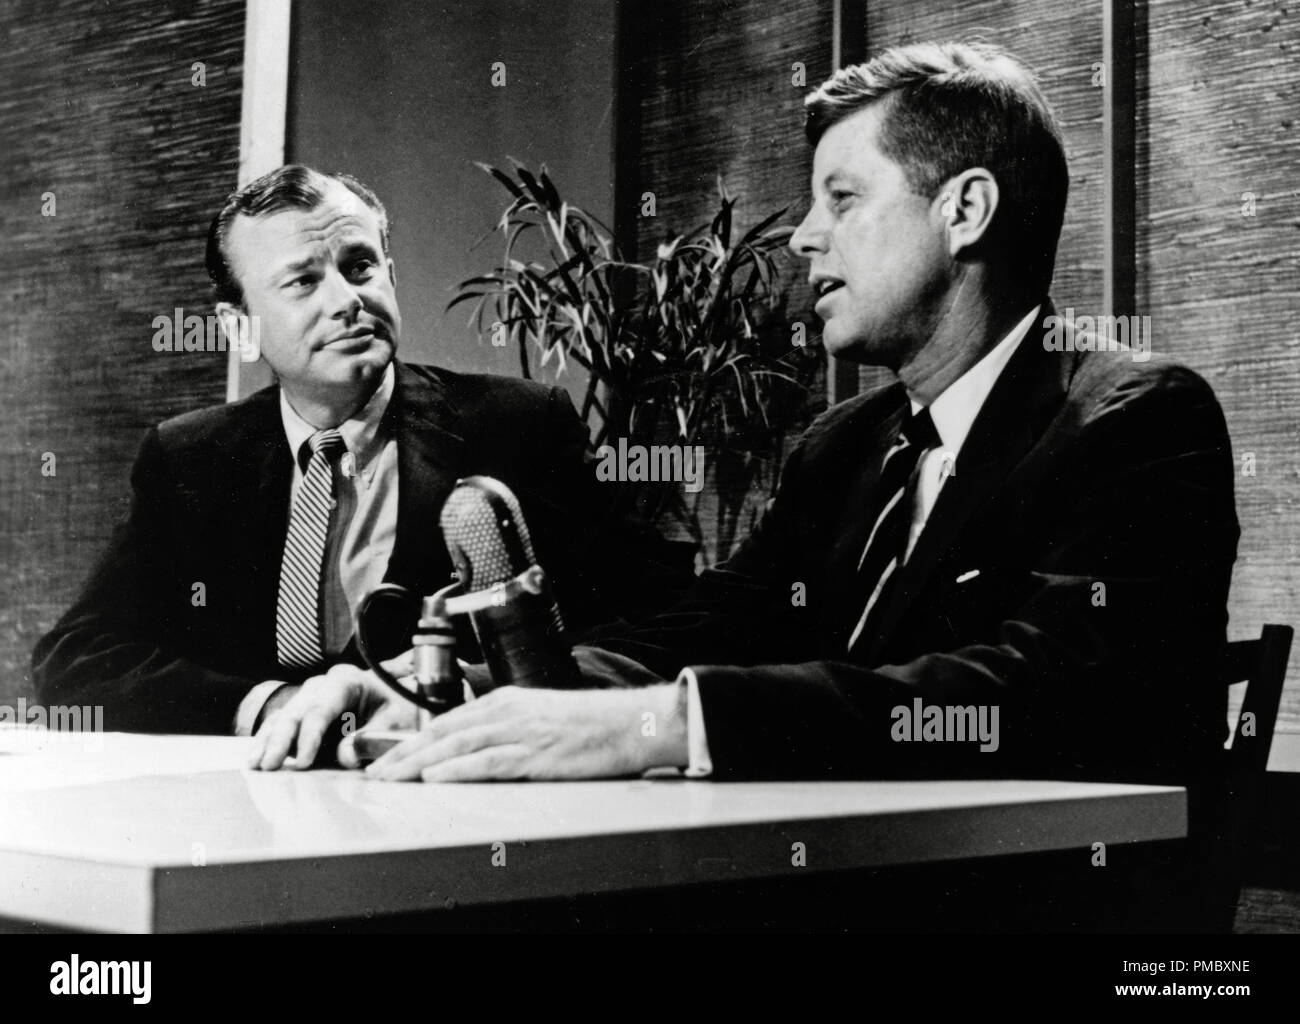 Fernsehen host Jack Paar und John F. Kennedy als Senator und Präsidentschaftskandidat, wenn er auf "Tonight Show" in 1959 Datei Referenz # 33300 026 THA erschienen Stockfoto